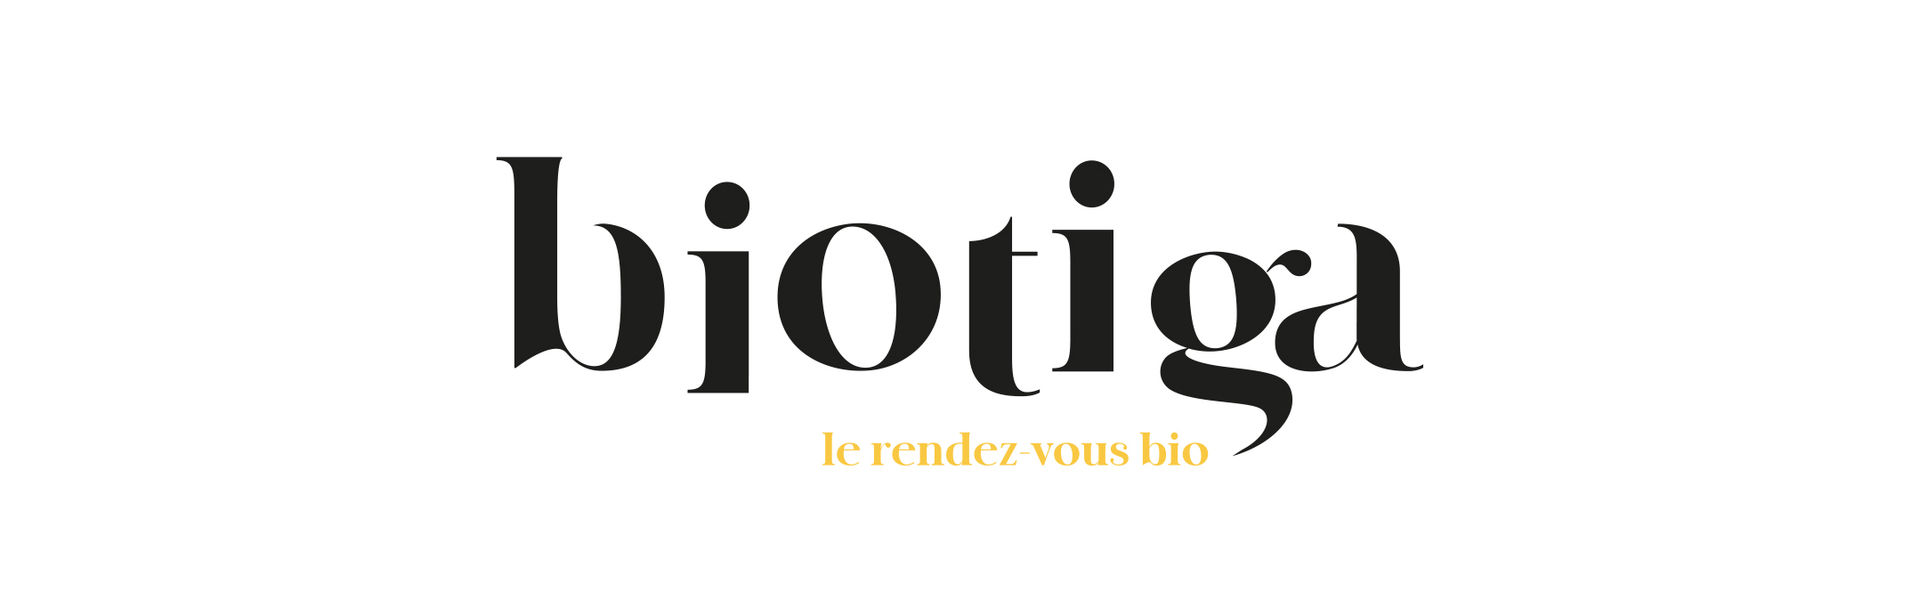 Biotiga, création de marque de magasin Bio (photo 3)